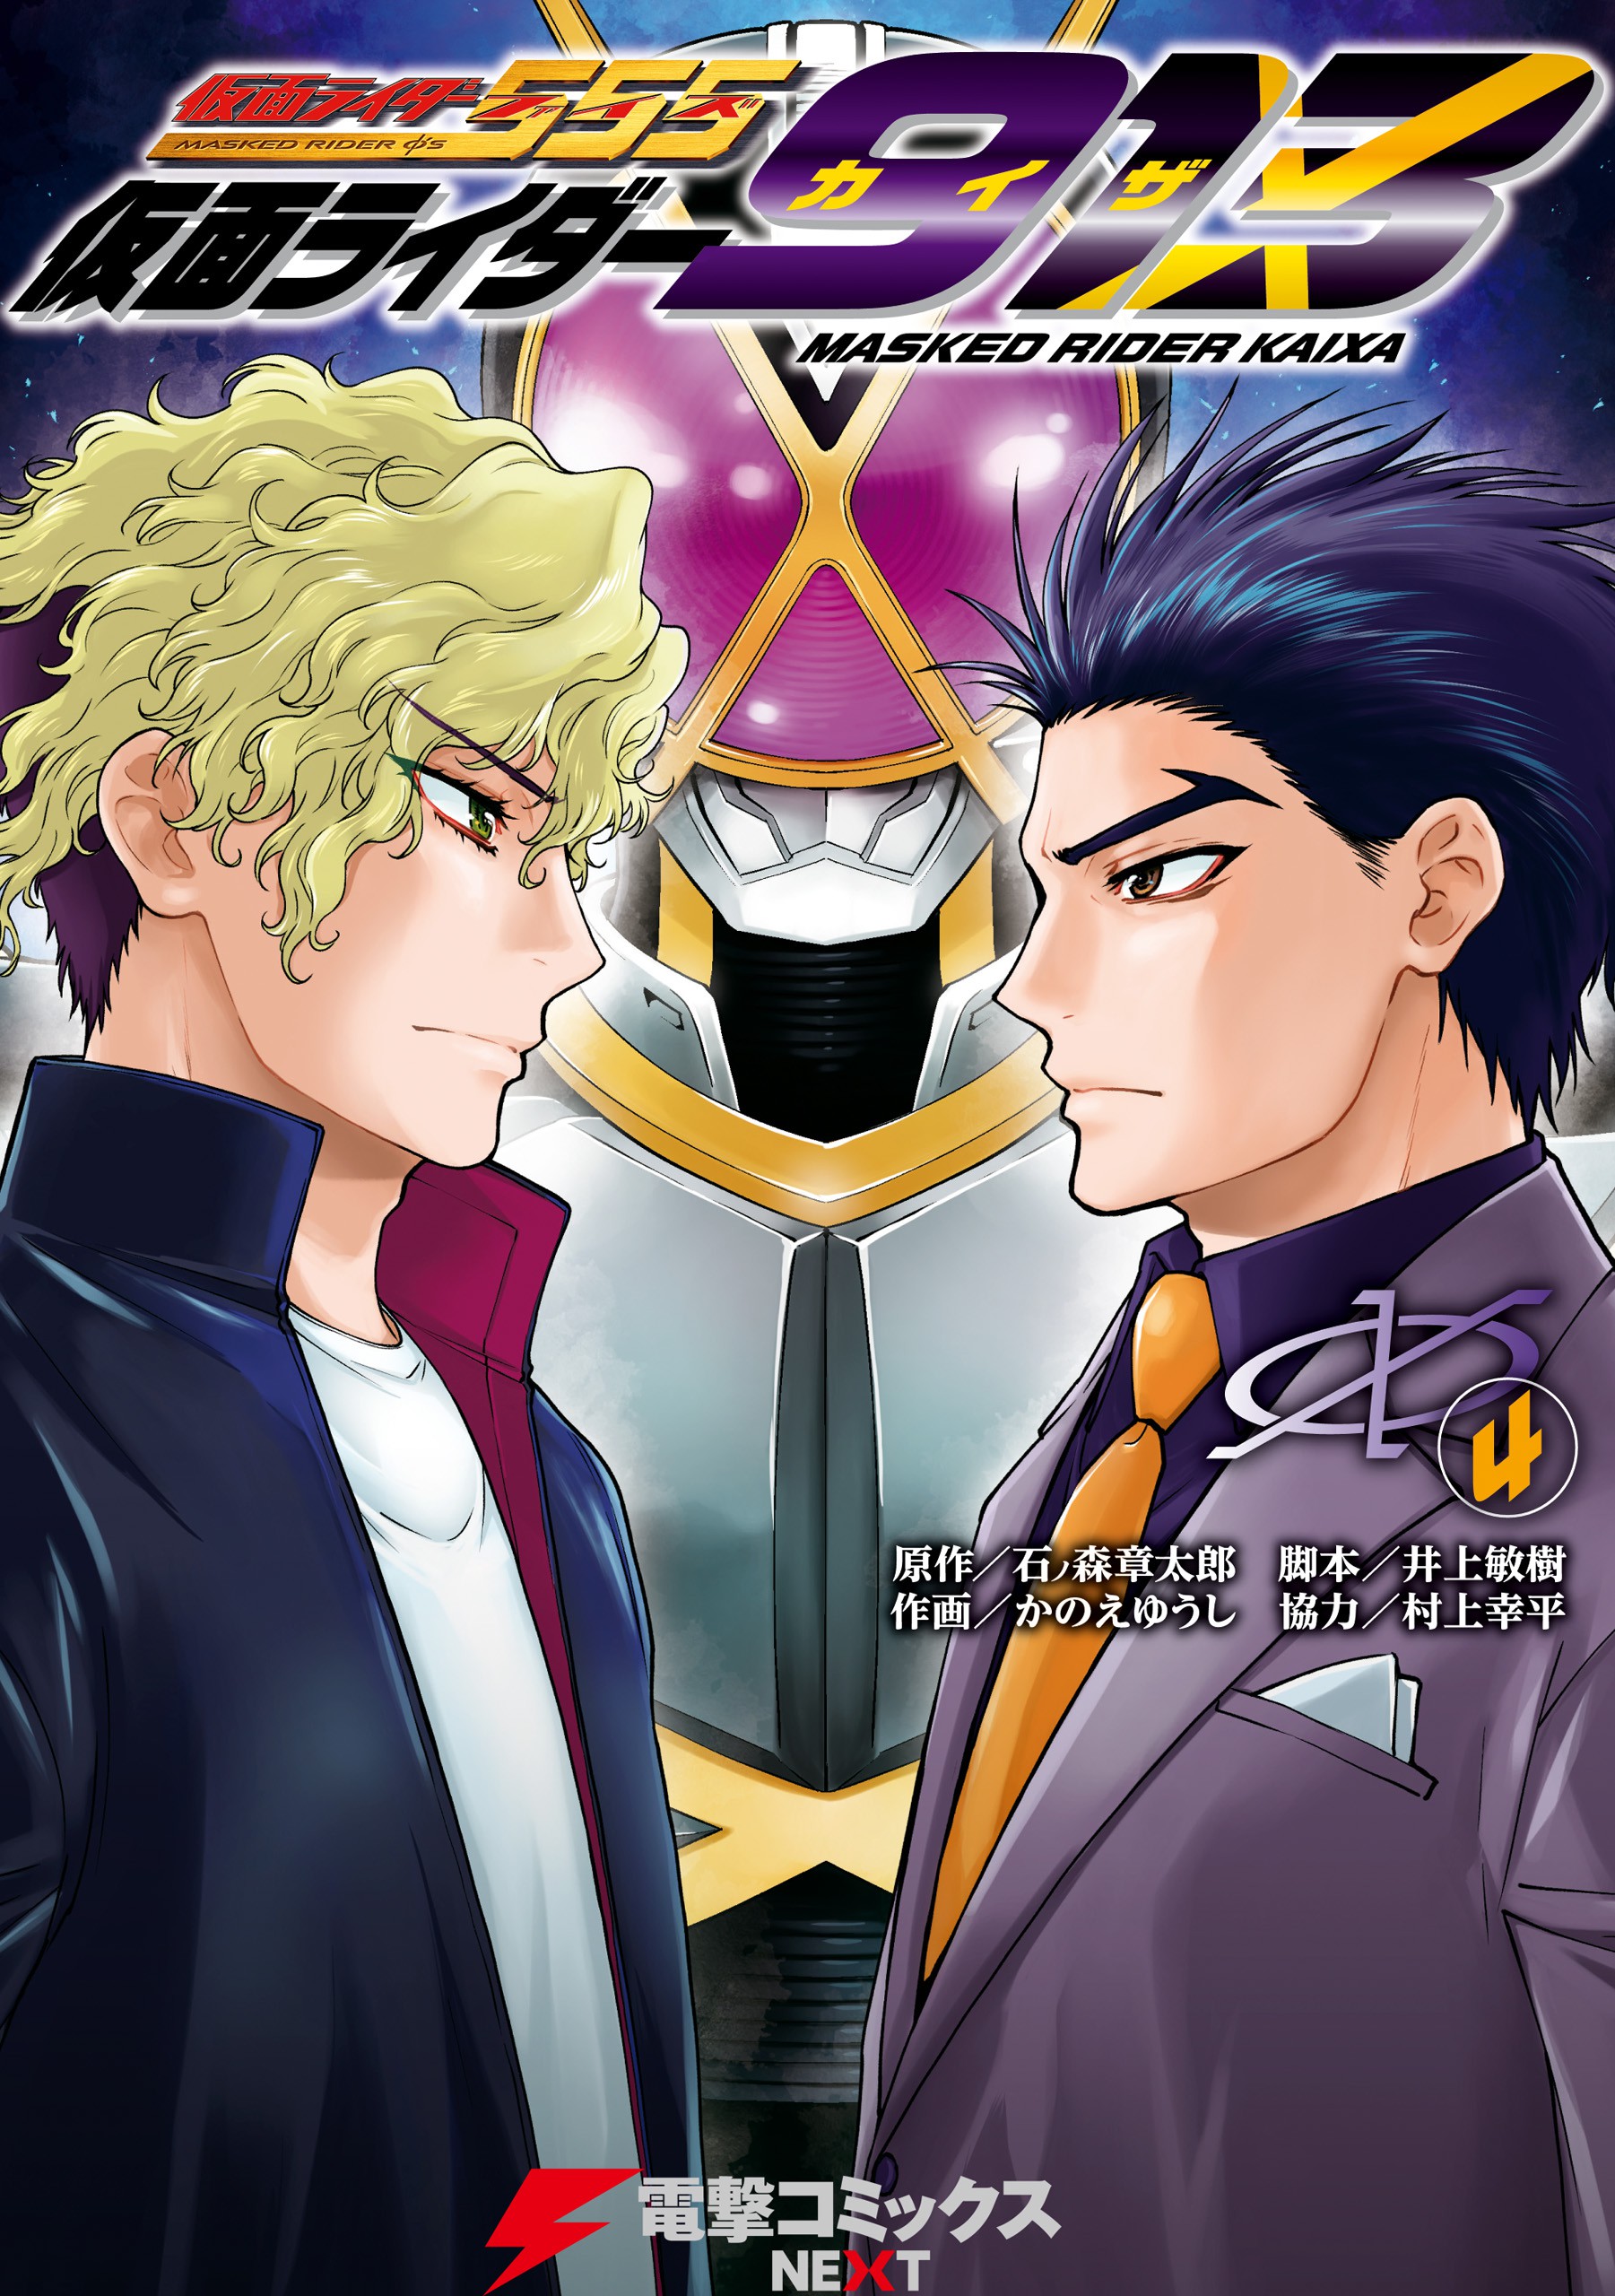 Kamen Rider 913 (Kaixa) cover 1